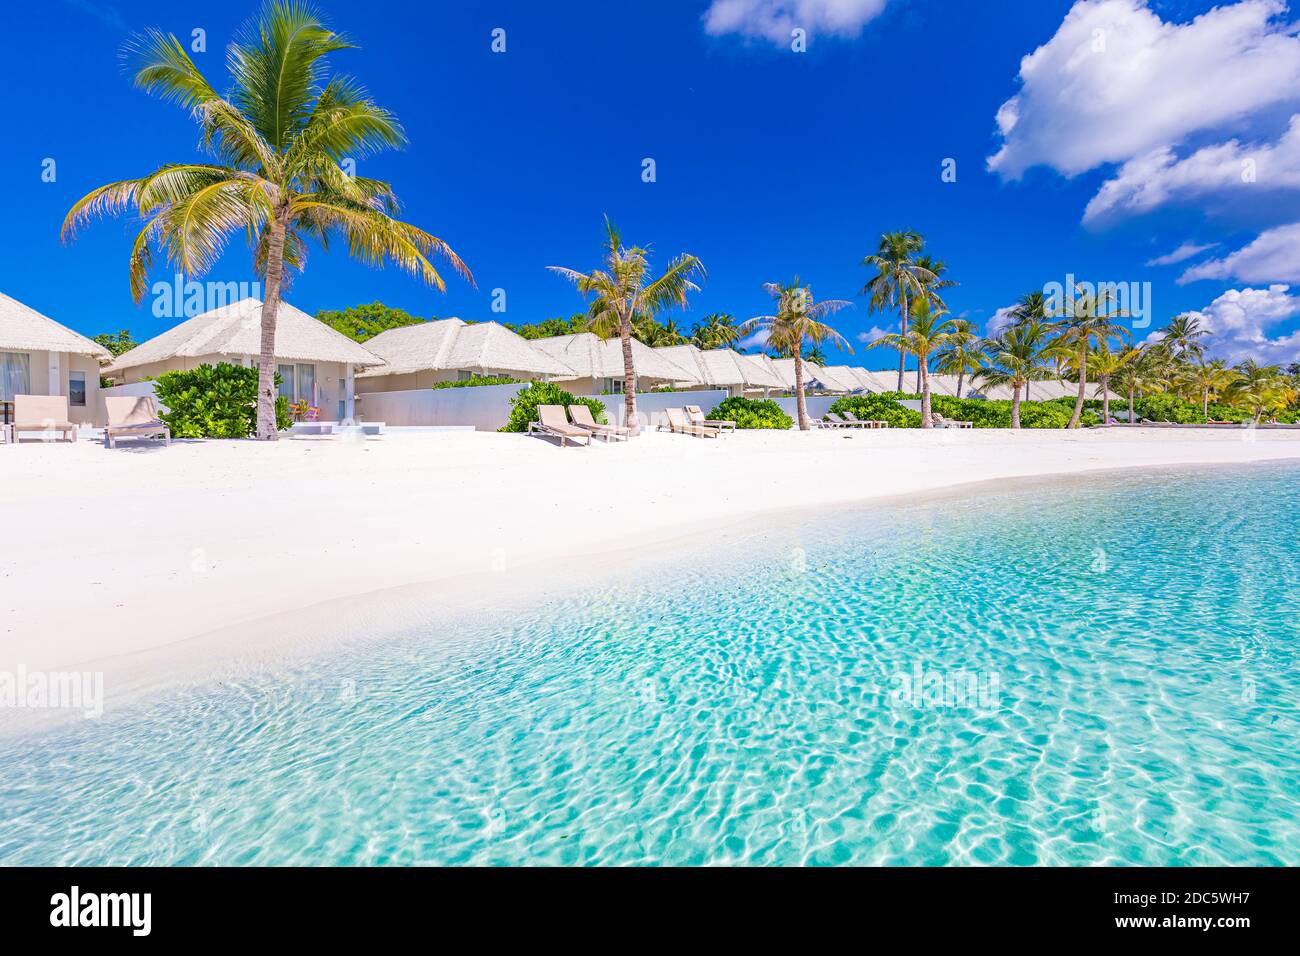 Splendido resort di lusso Maldive sull'isola tropicale. Incredibile paesaggio di viaggio sulla spiaggia, ville sulla spiaggia, palme su sabbia bianca. Vista estiva esotica Foto Stock